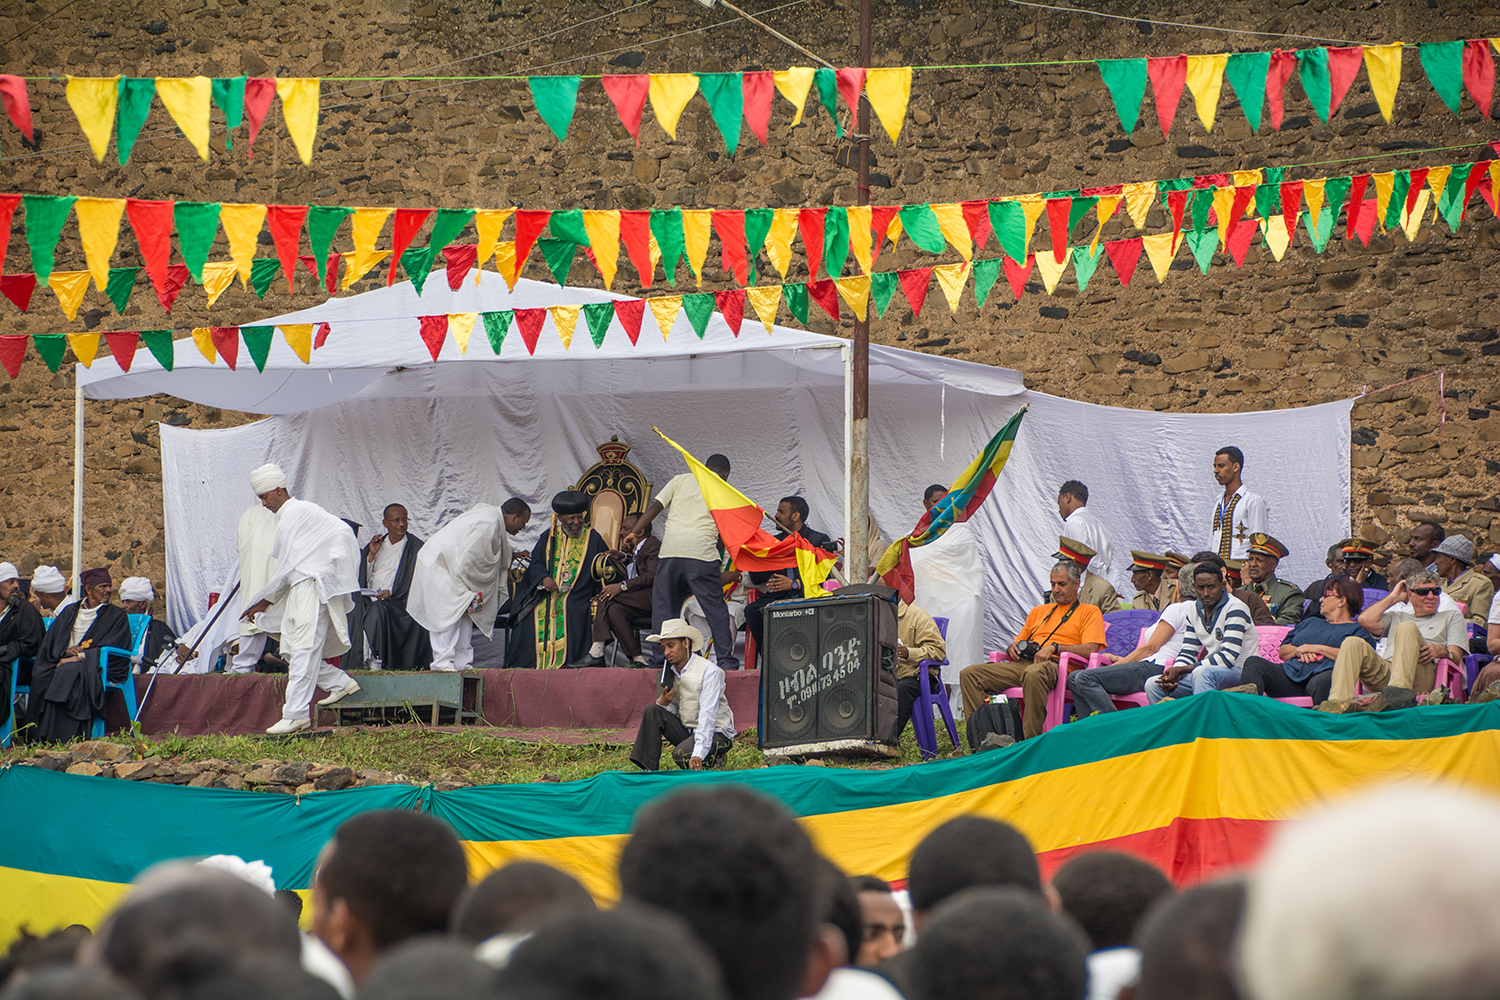 エチオピアのマスカル祭